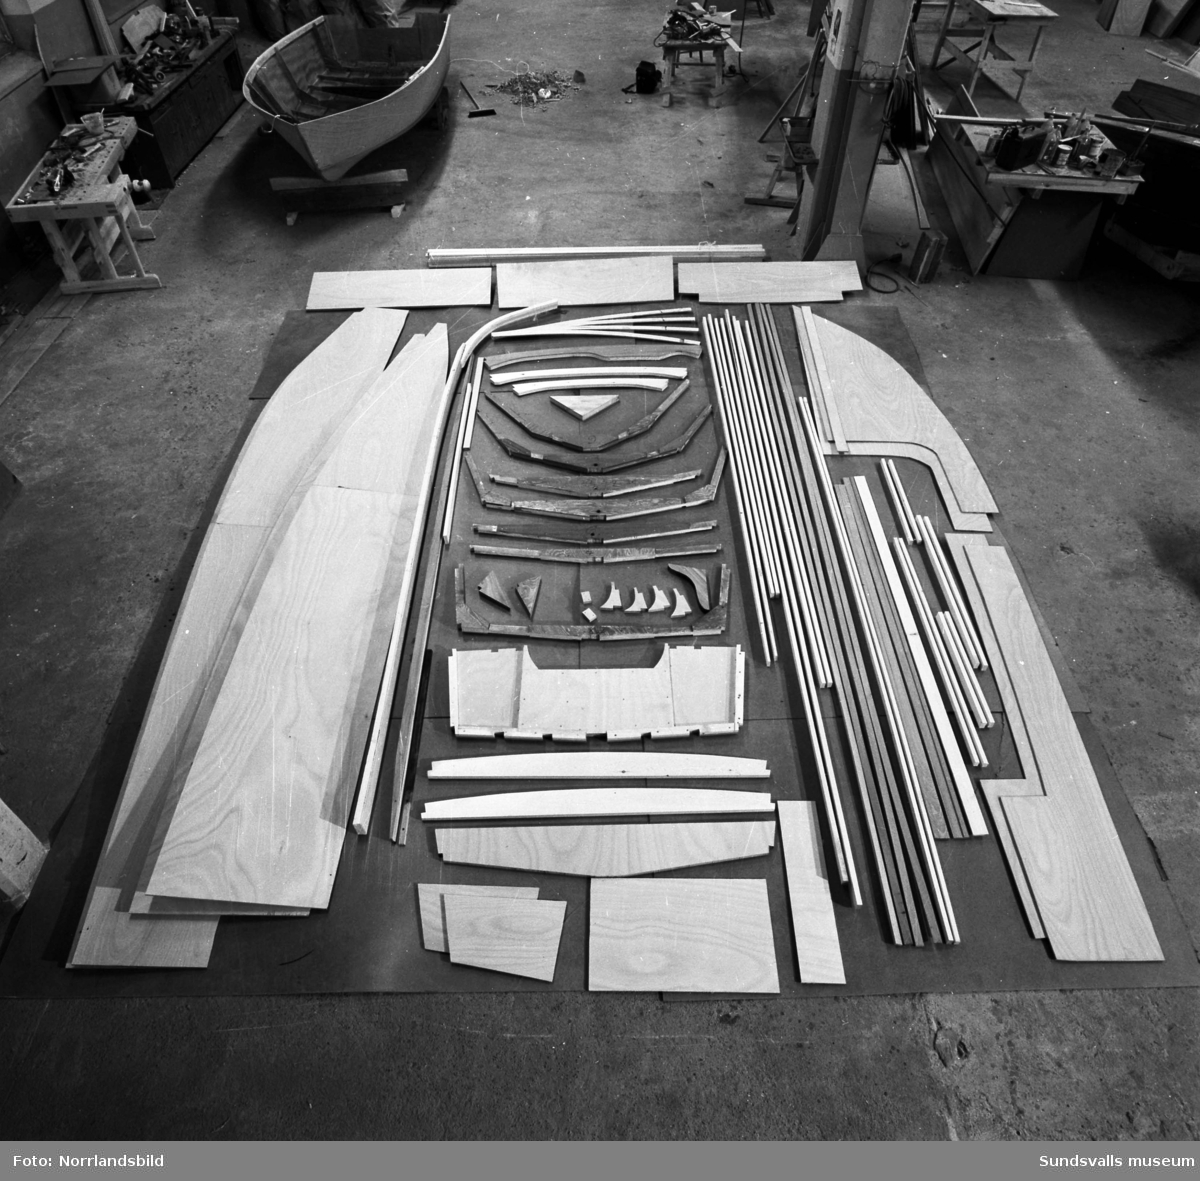 Bildserie från bygget av en liten sportbåt i plywood vid Söråkers båtindustri. Båten kom som en färdig byggsats till fabriken.